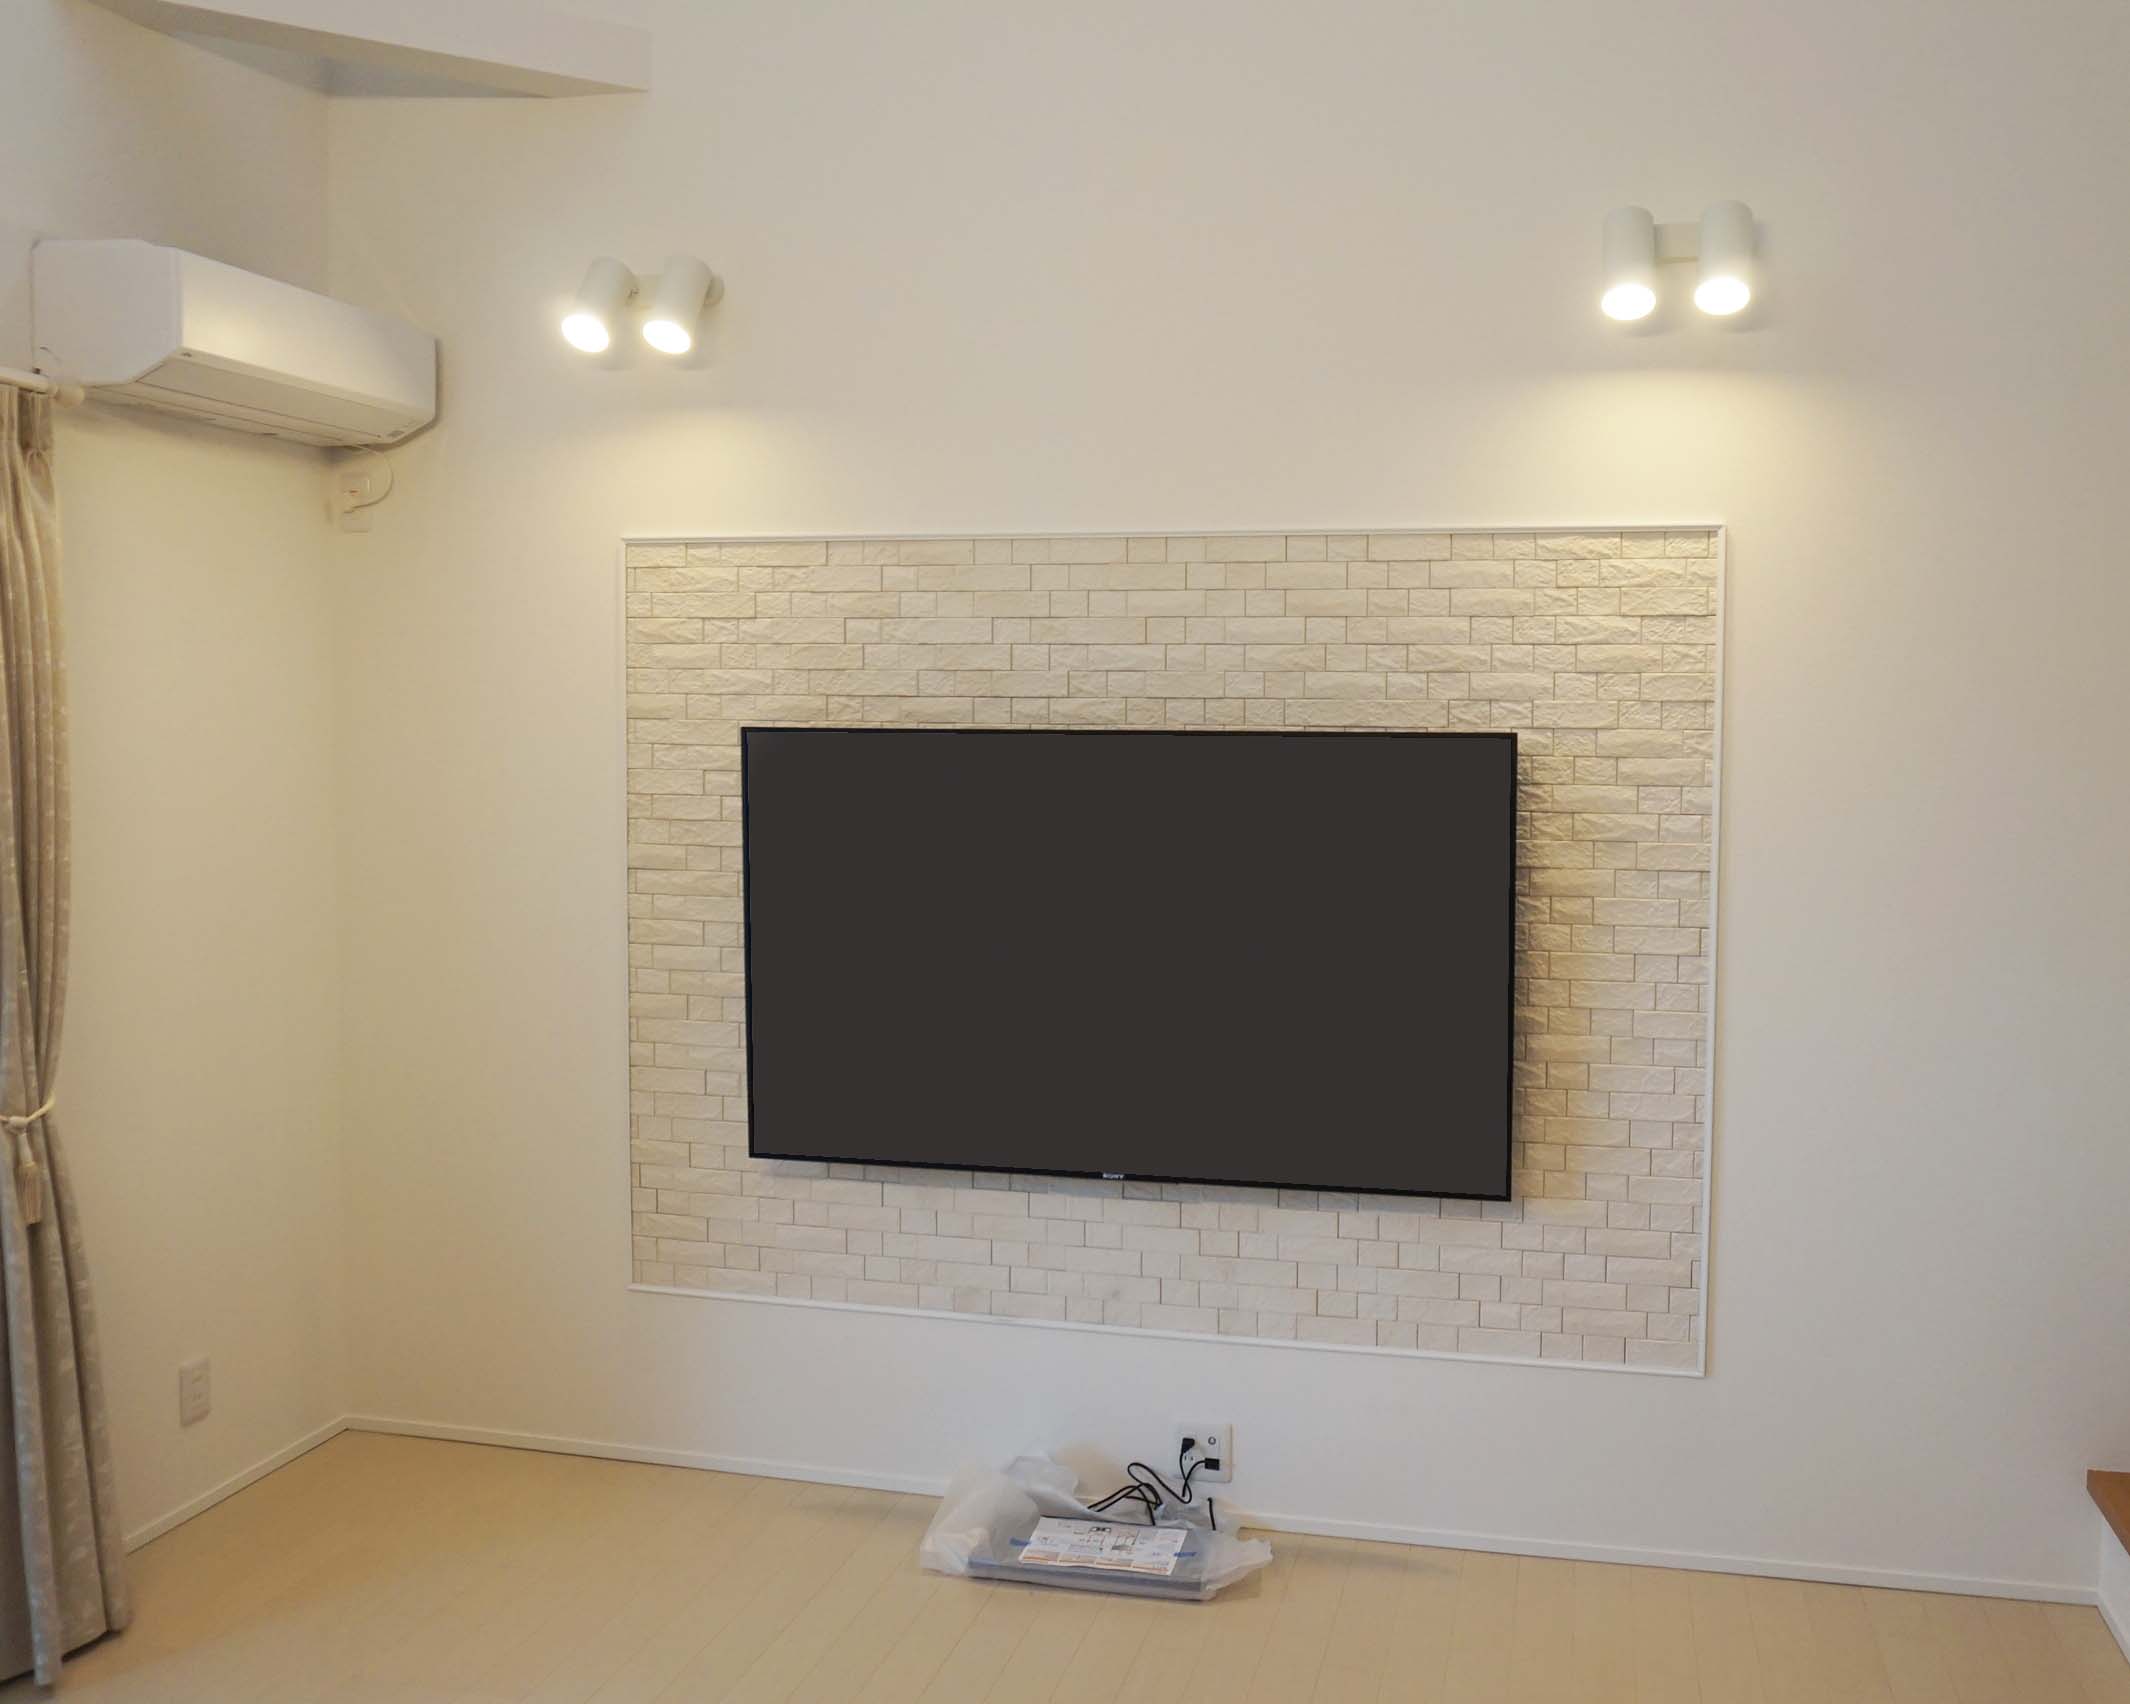 愛知県 一宮市でエコカラット壁に65インチのブラビアを壁掛け 壁掛けテレビはカトー電器